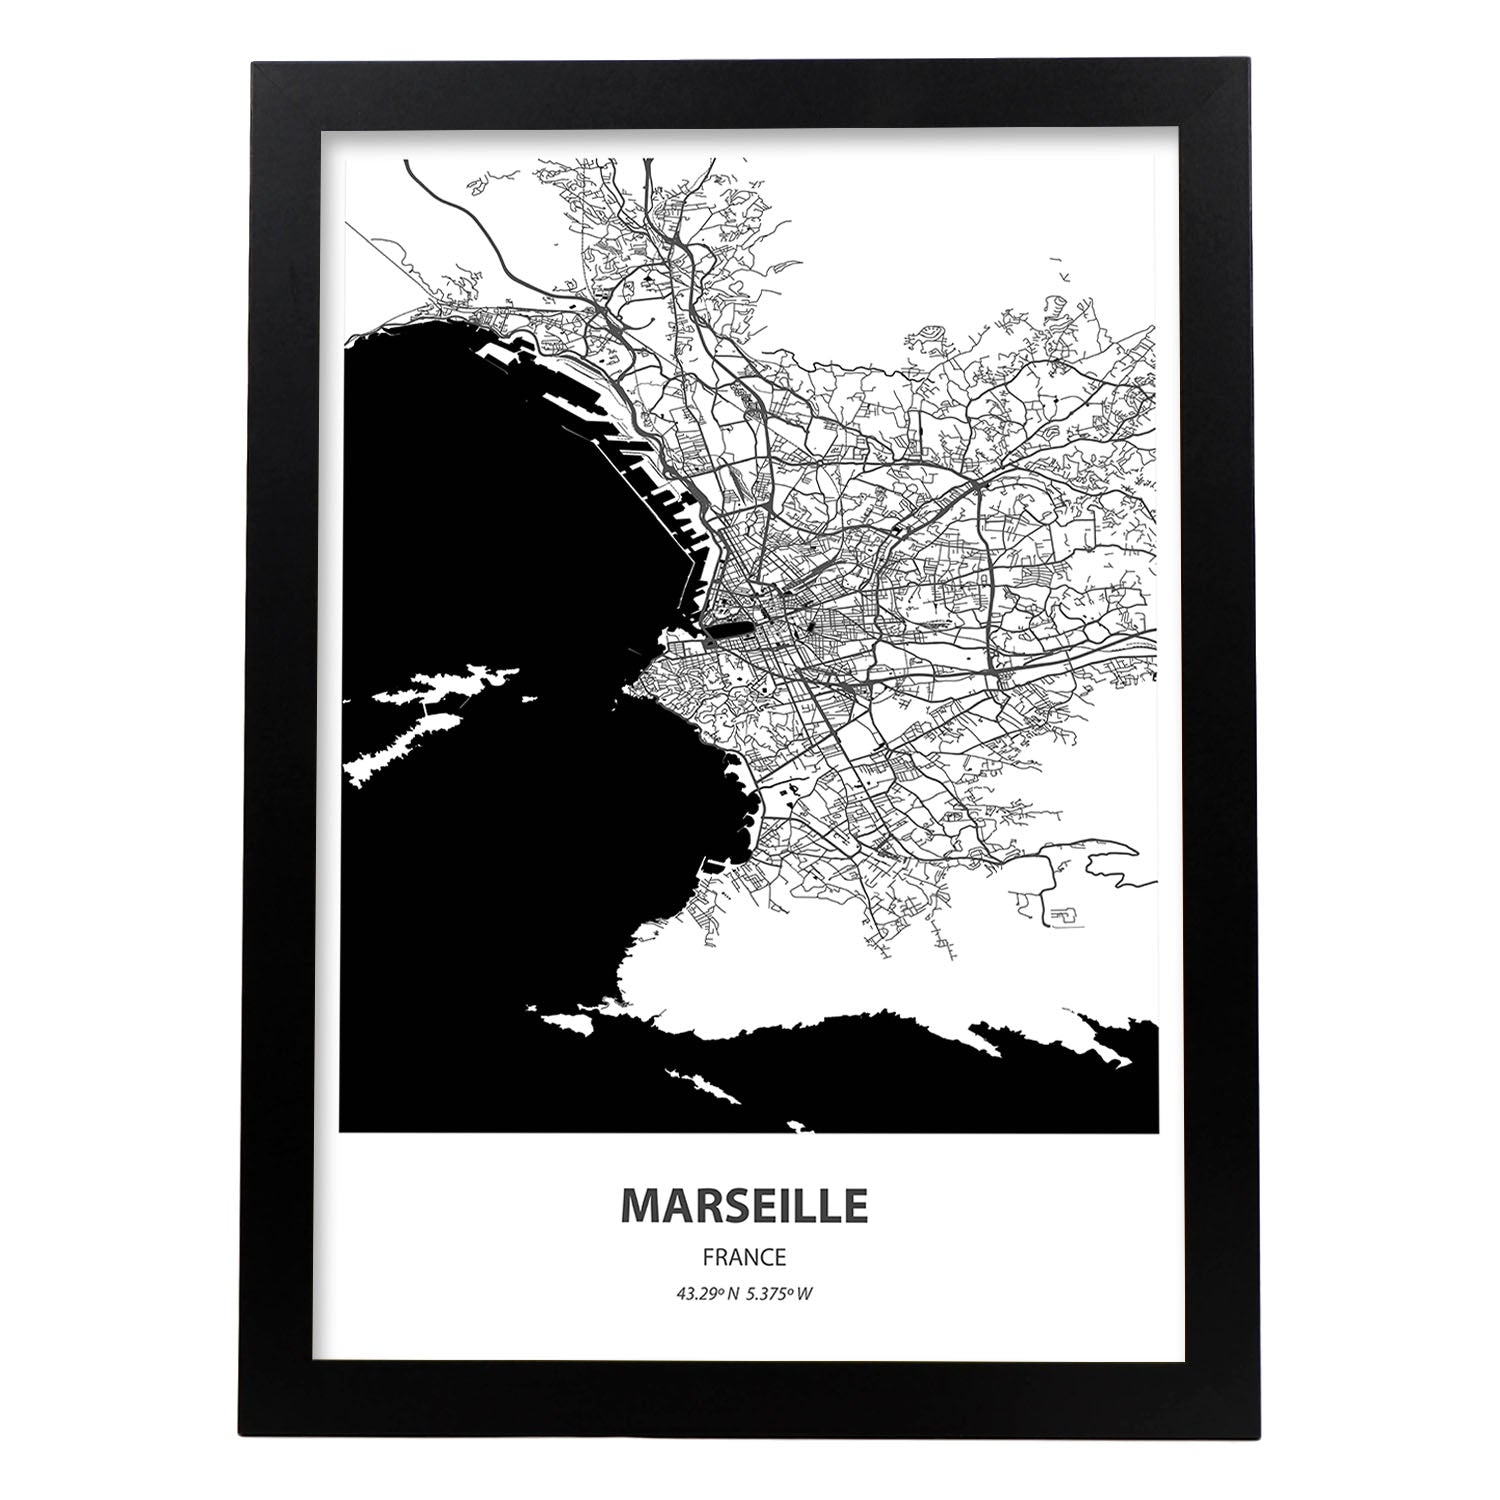 Poster con mapa de Marselle - Francia. Láminas de ciudades de Francia con mares y ríos en color negro.-Artwork-Nacnic-A4-Marco Negro-Nacnic Estudio SL